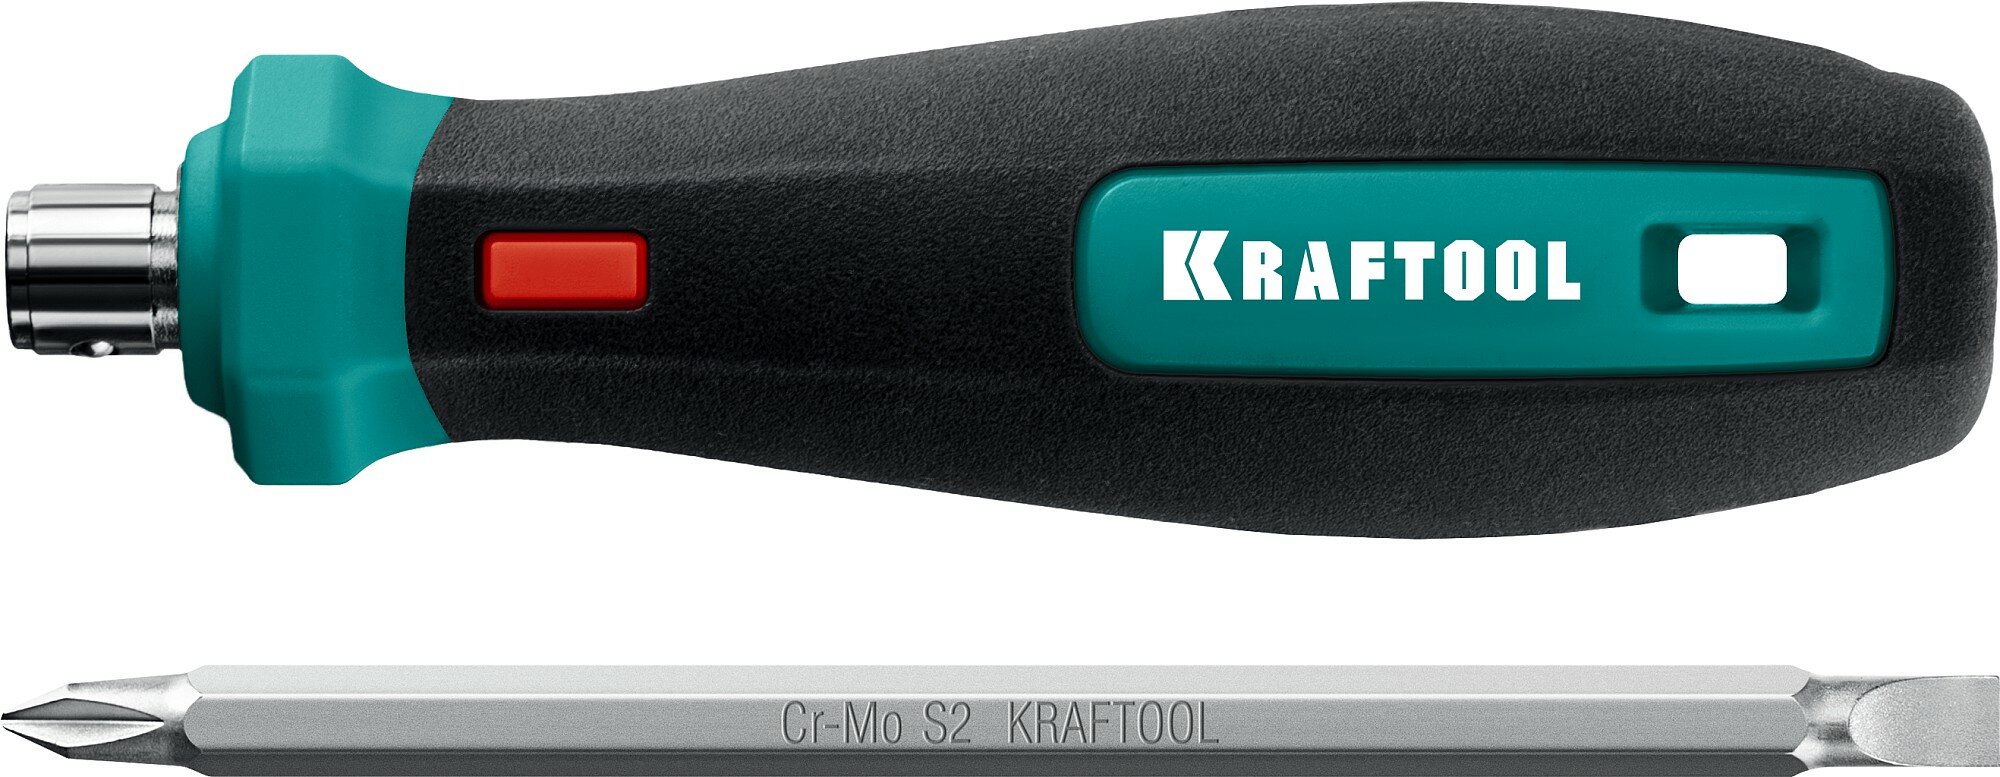 KRAFTOOL Universal-8, Универсальная переставная отвертка (26168)